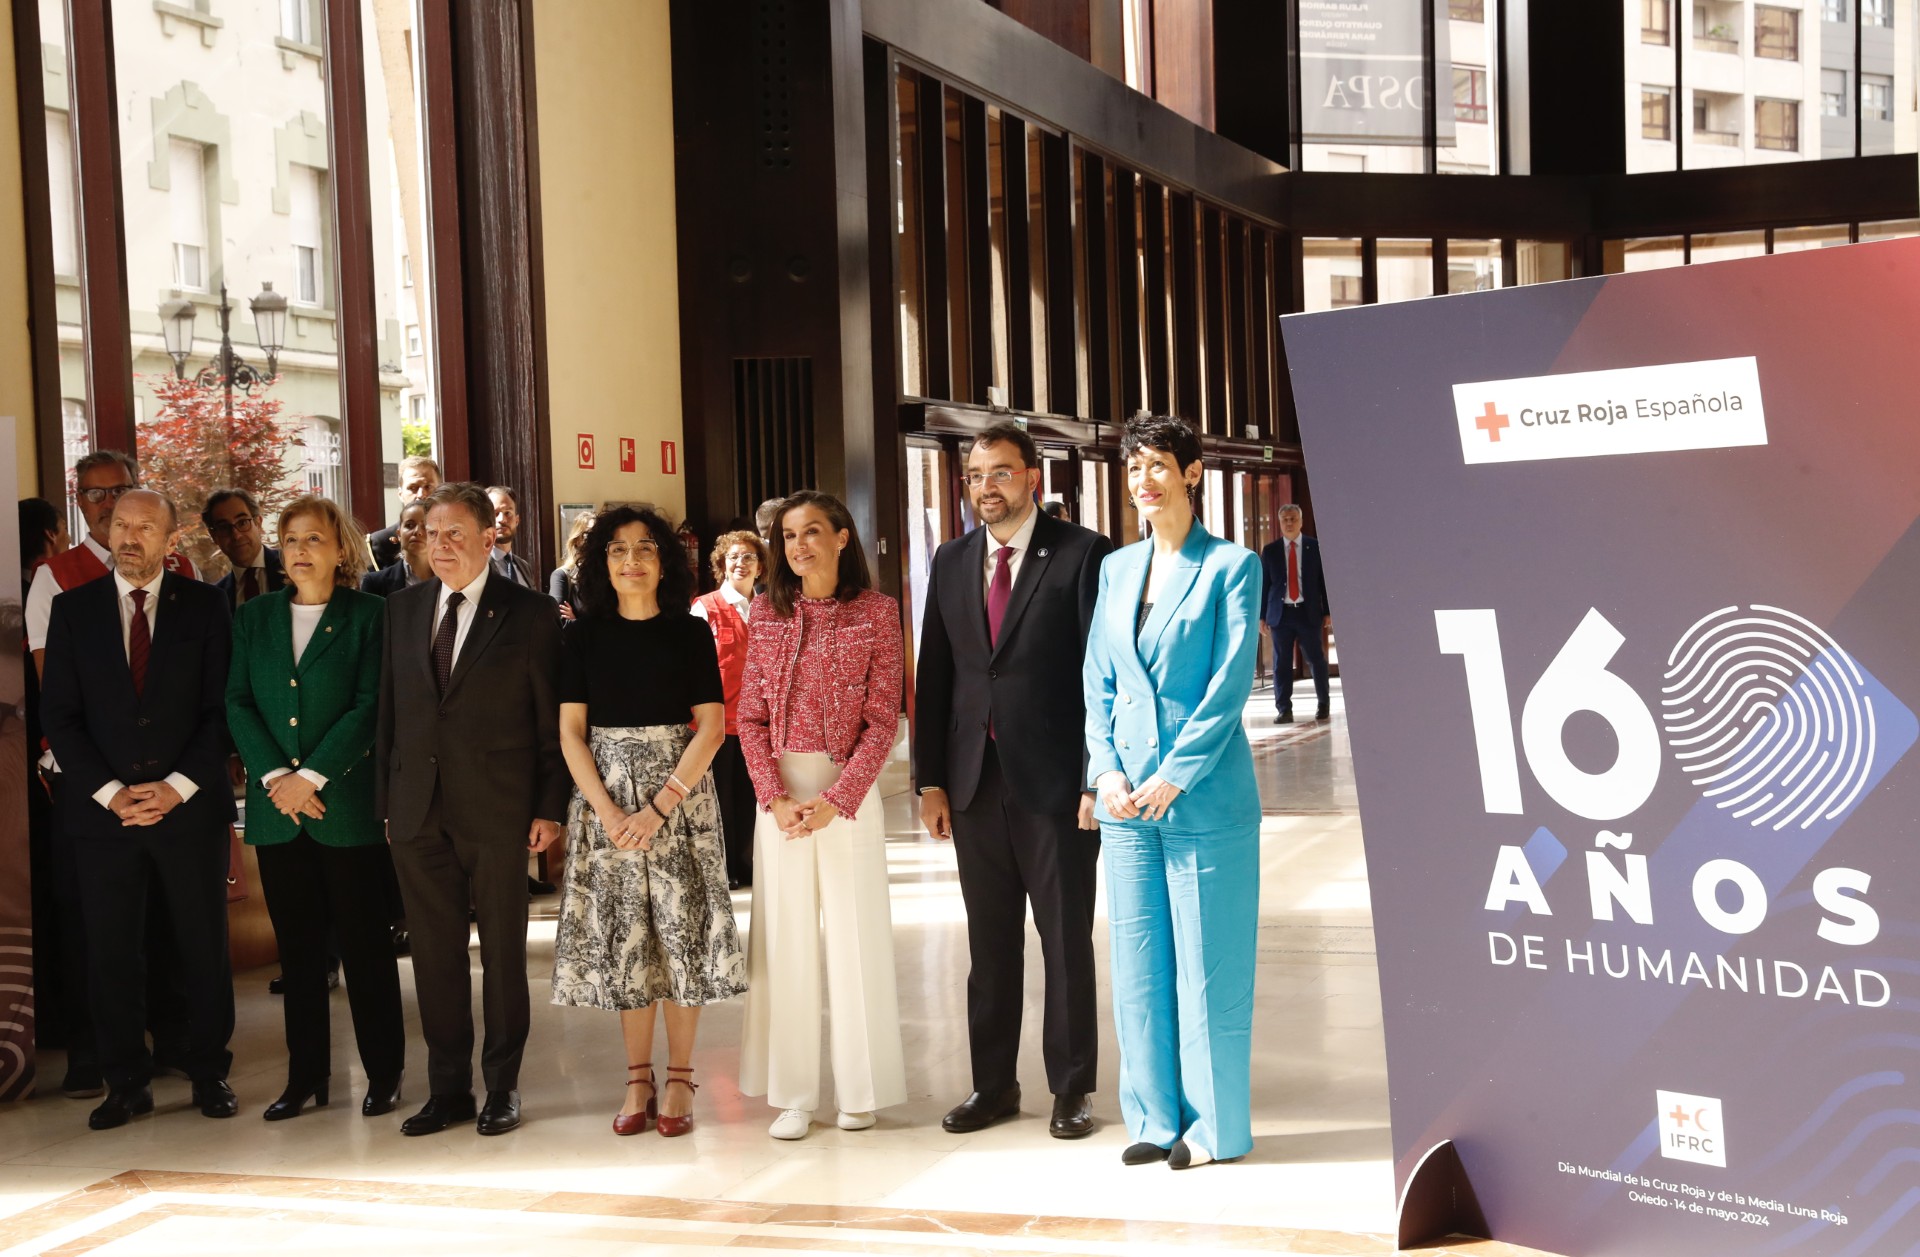 Imagen - El presidente participa en la conmemoración de los 160 años de la Cruz Roja Española, que tiene Oviedo como escenario